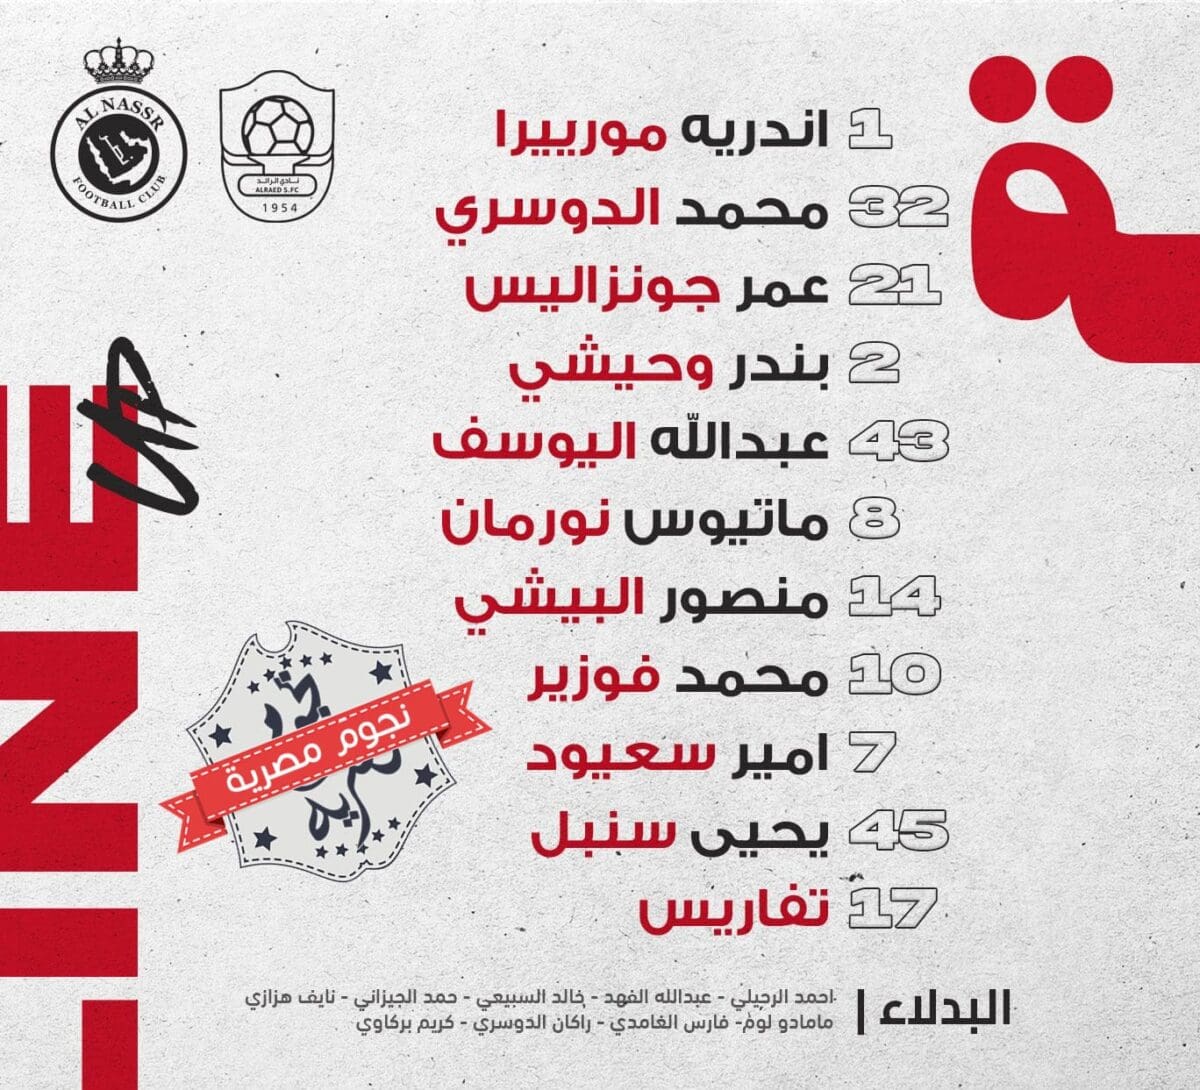 تشكيلة الرائد السعودي في مواجهة النصر في دوري المحترفين (مصدر الصورة. الحساب الرسمي لرائد التحدي على تويتر)